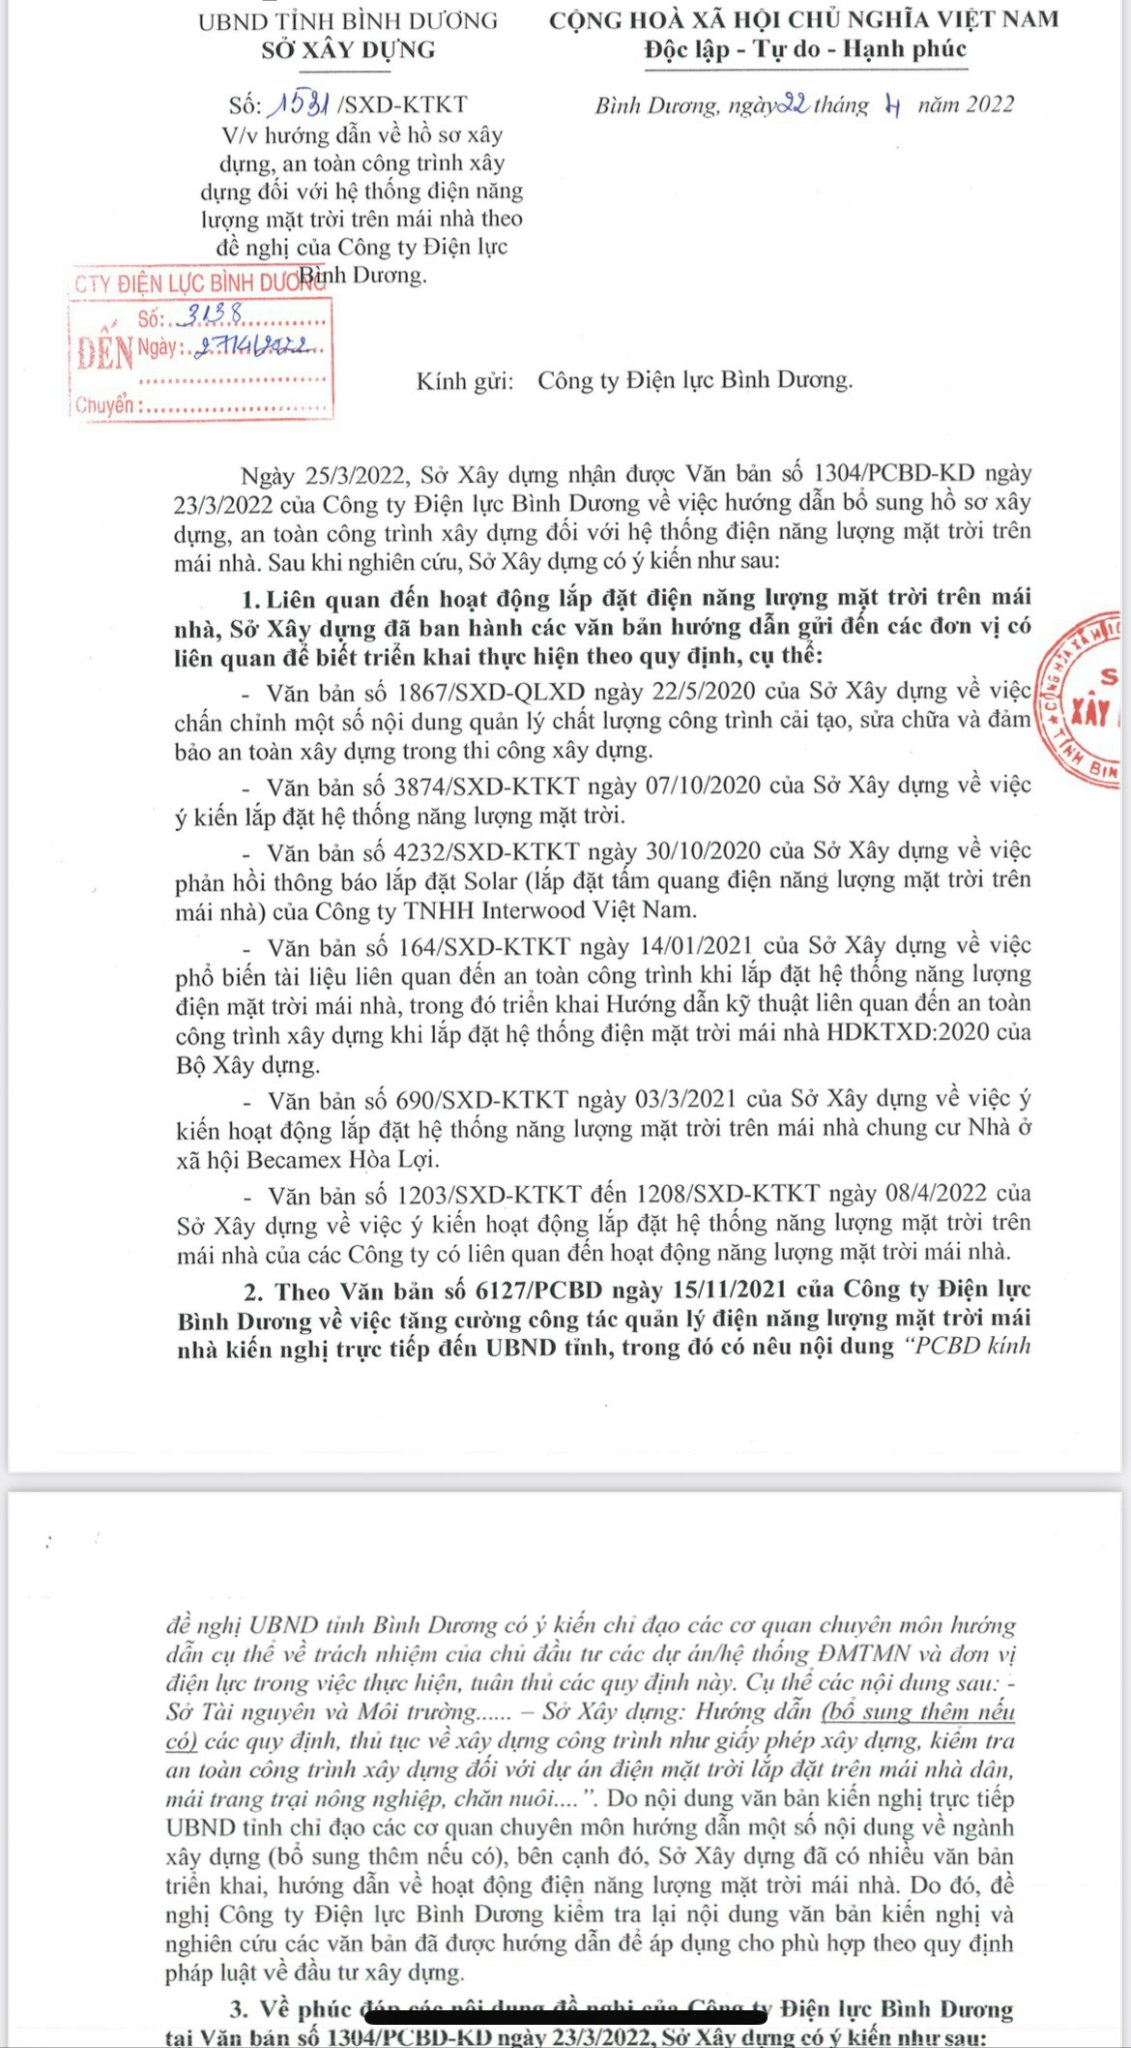 đại diện Công ty TNHH SoLar Sài Gòn, cho rằng: Trong câu chuyện này đang có sự hiểu nhầm của Sở Xây dựng Bình Dương khi trả lời Công ty Điện lực Bình Dương tại công văn số 1531/SXD-KTKT ký ngày 22/4/2022